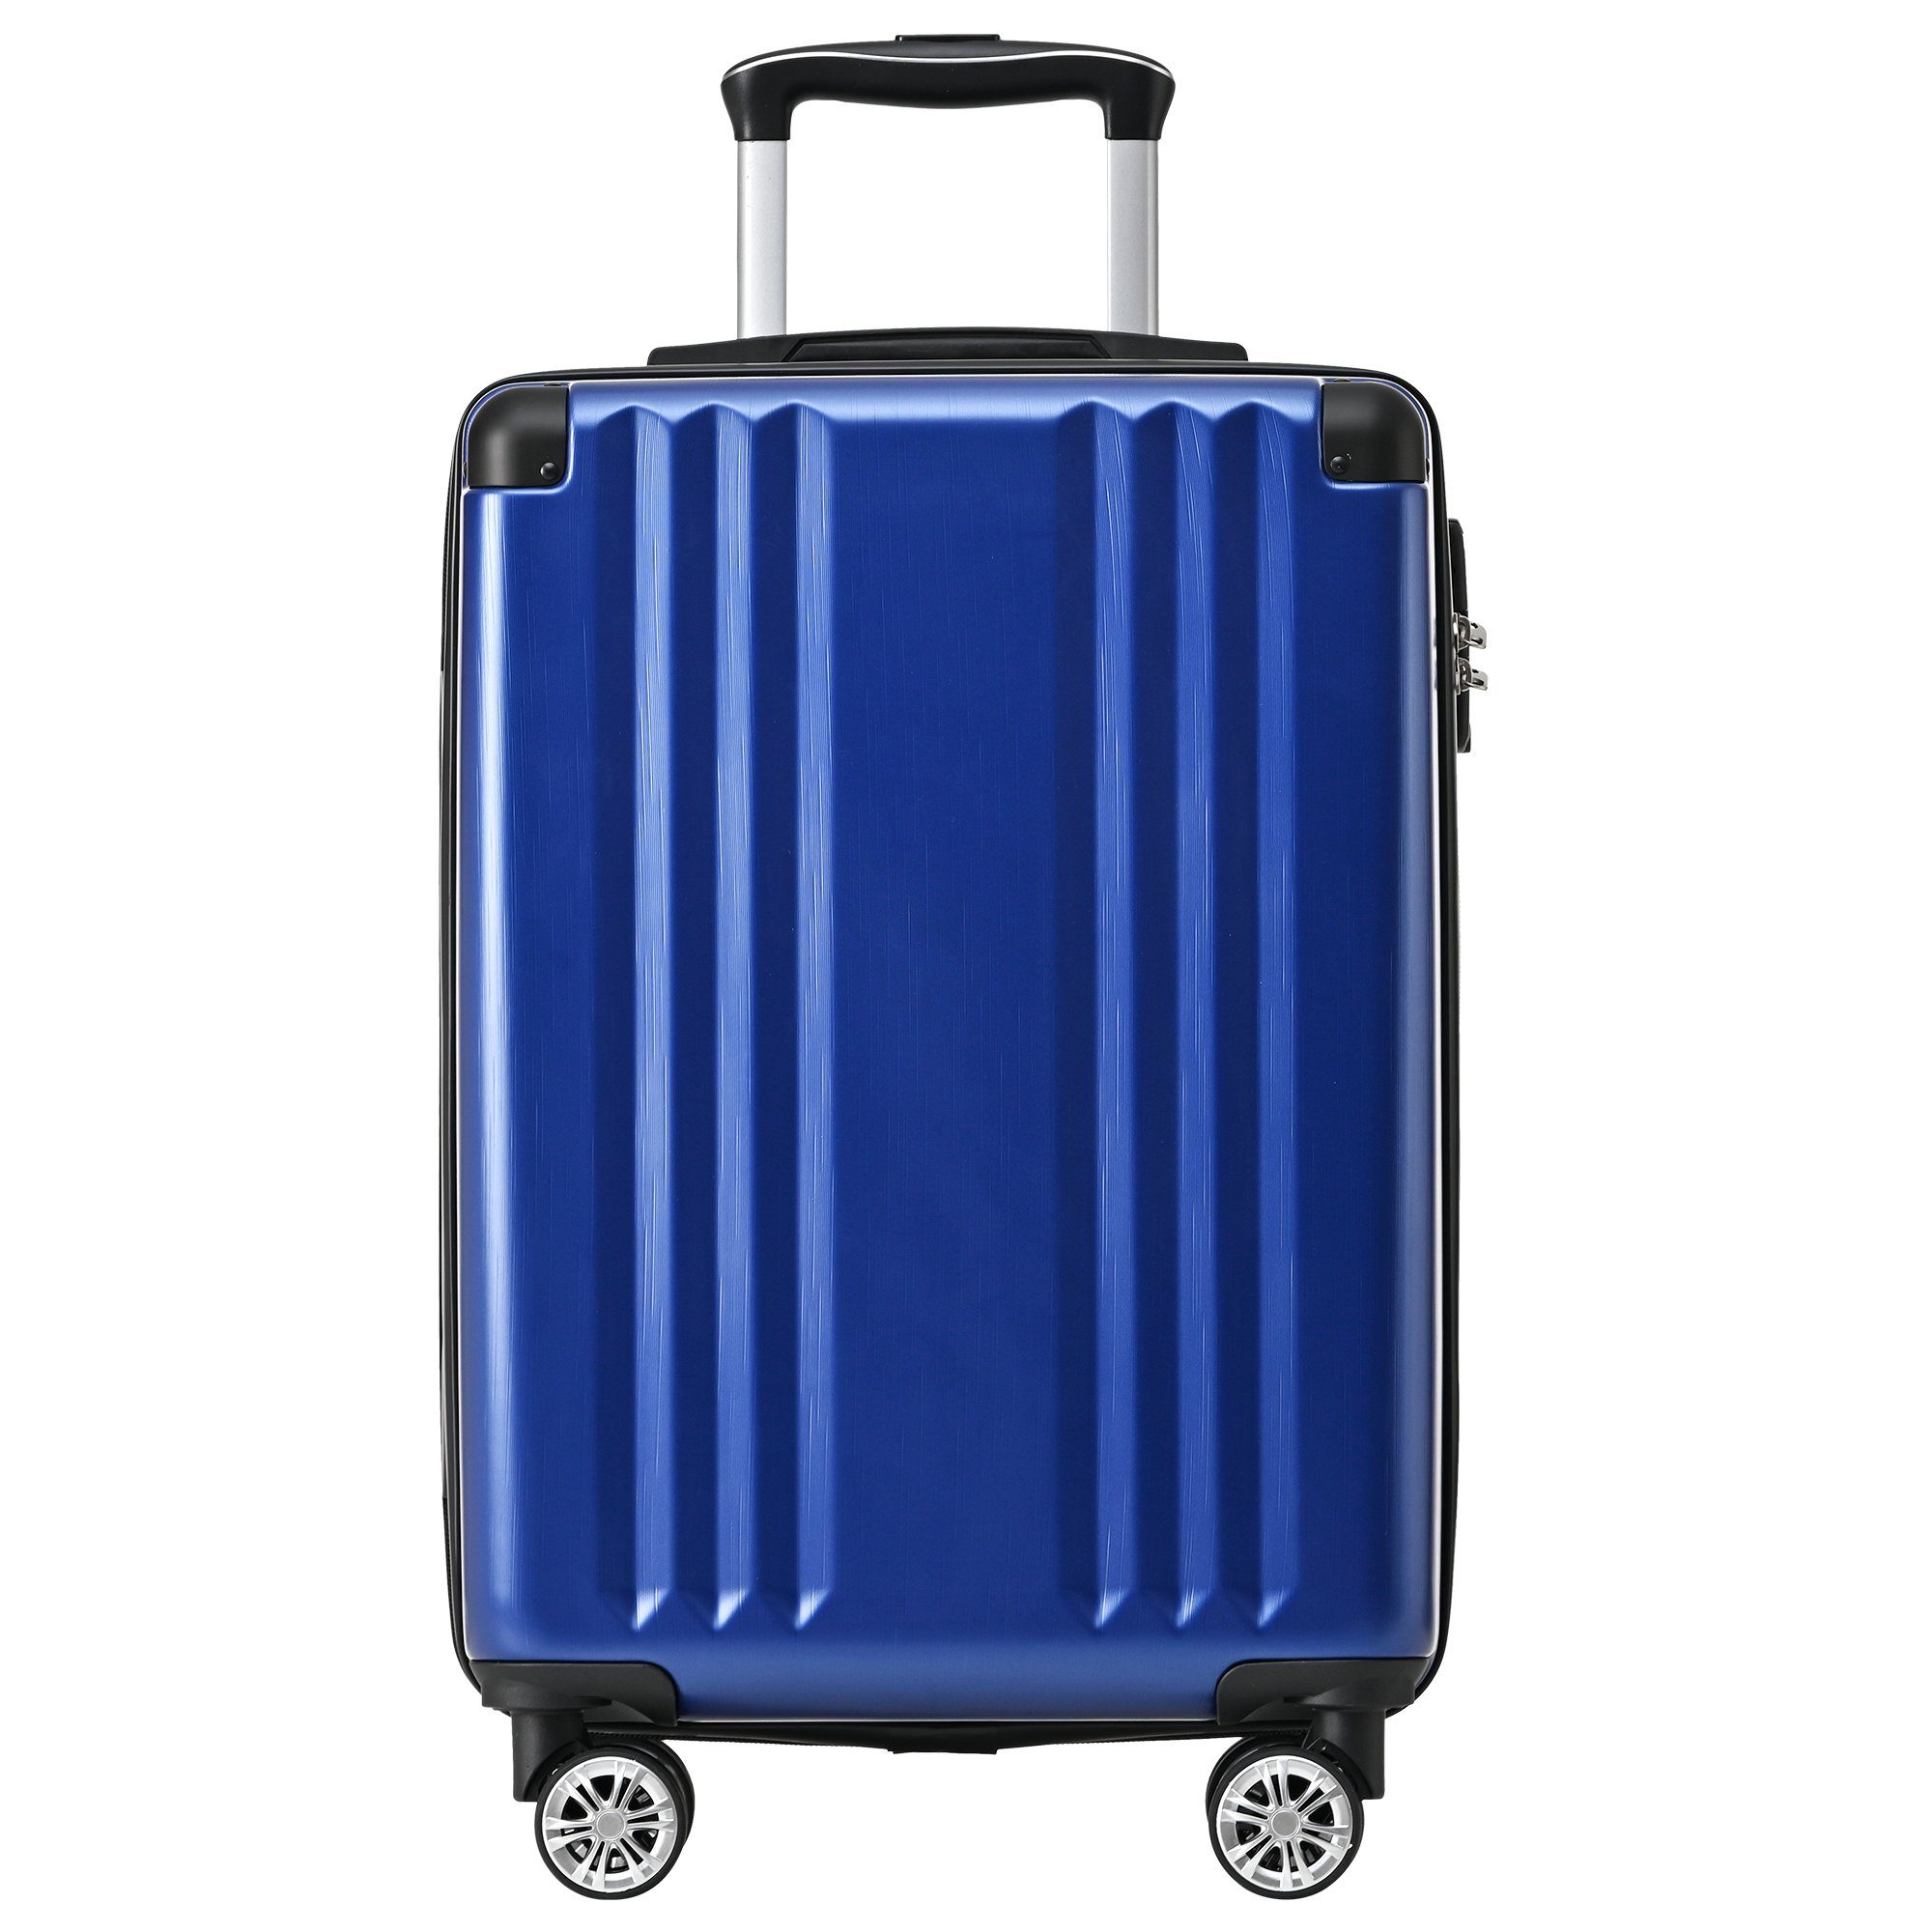 Ulife M-Größe:56.5*37.5*22.5 Blau ABS-Material, TSA Zollschloss, Reisekoffer 4 Handgepäck-Trolley Rollen,